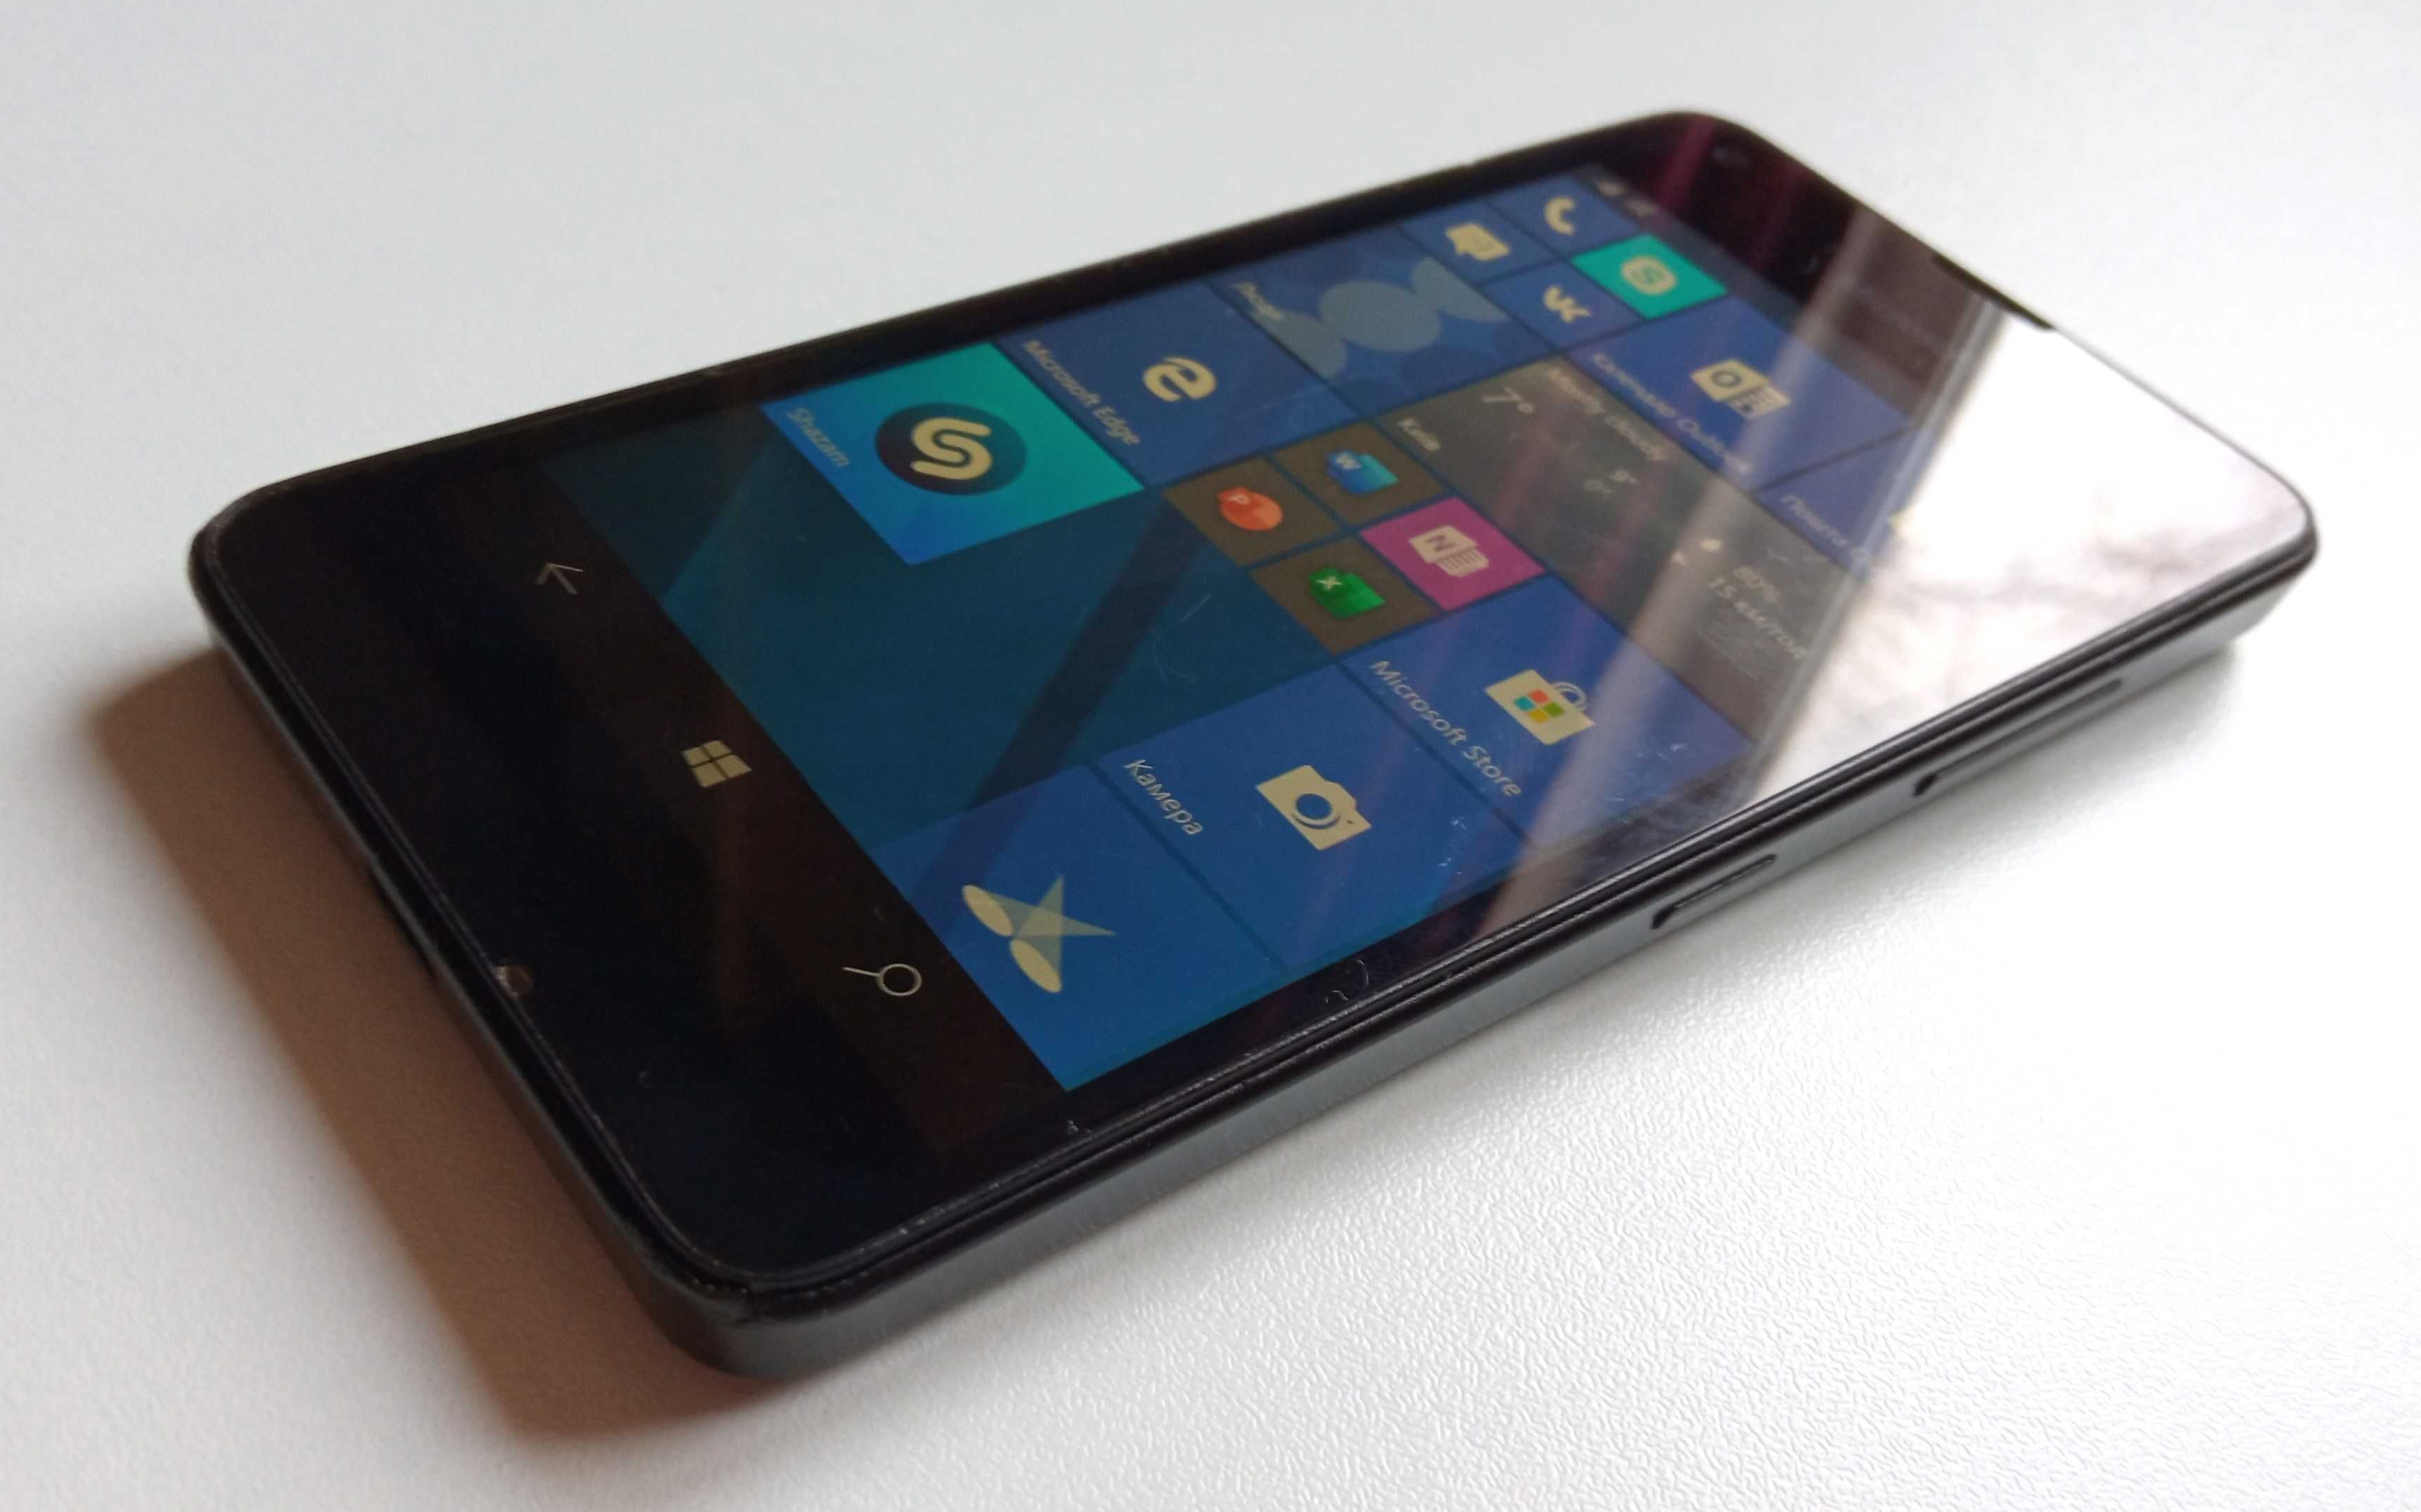 Мобильный телефон Microsoft Lumia 550, Windows 10, 1 SIM